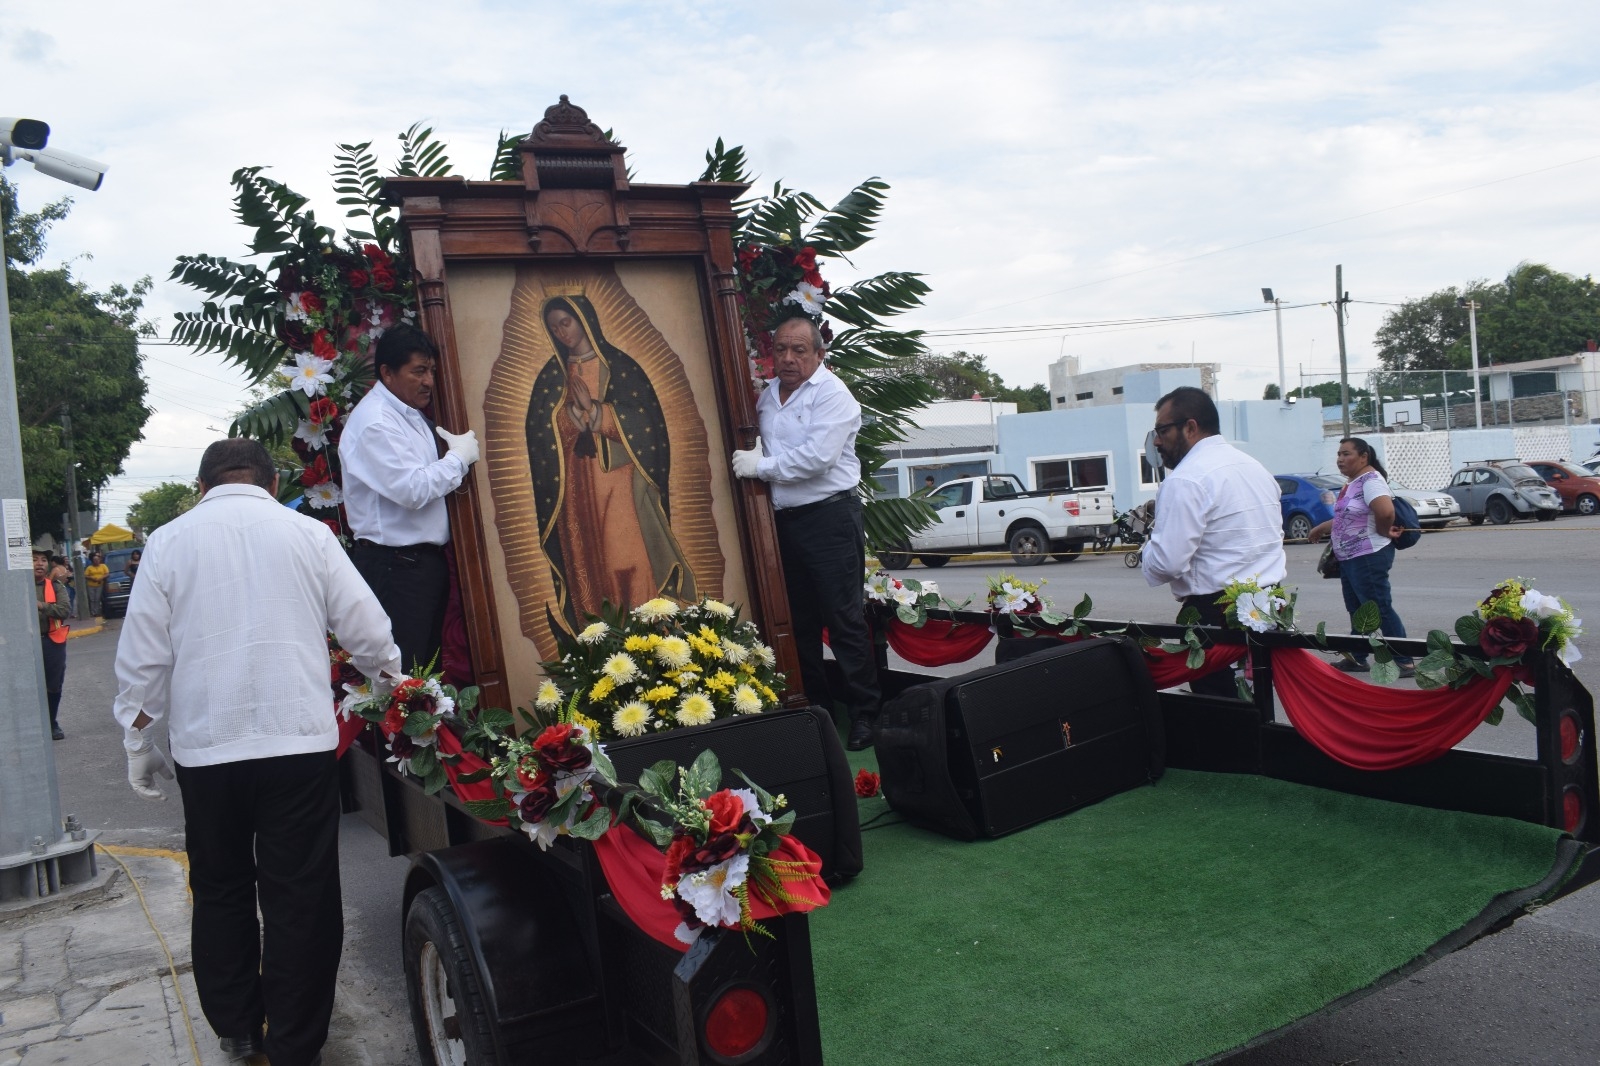 Los feligreses acompañaron a la imagen de la Virgen de Guadalupe